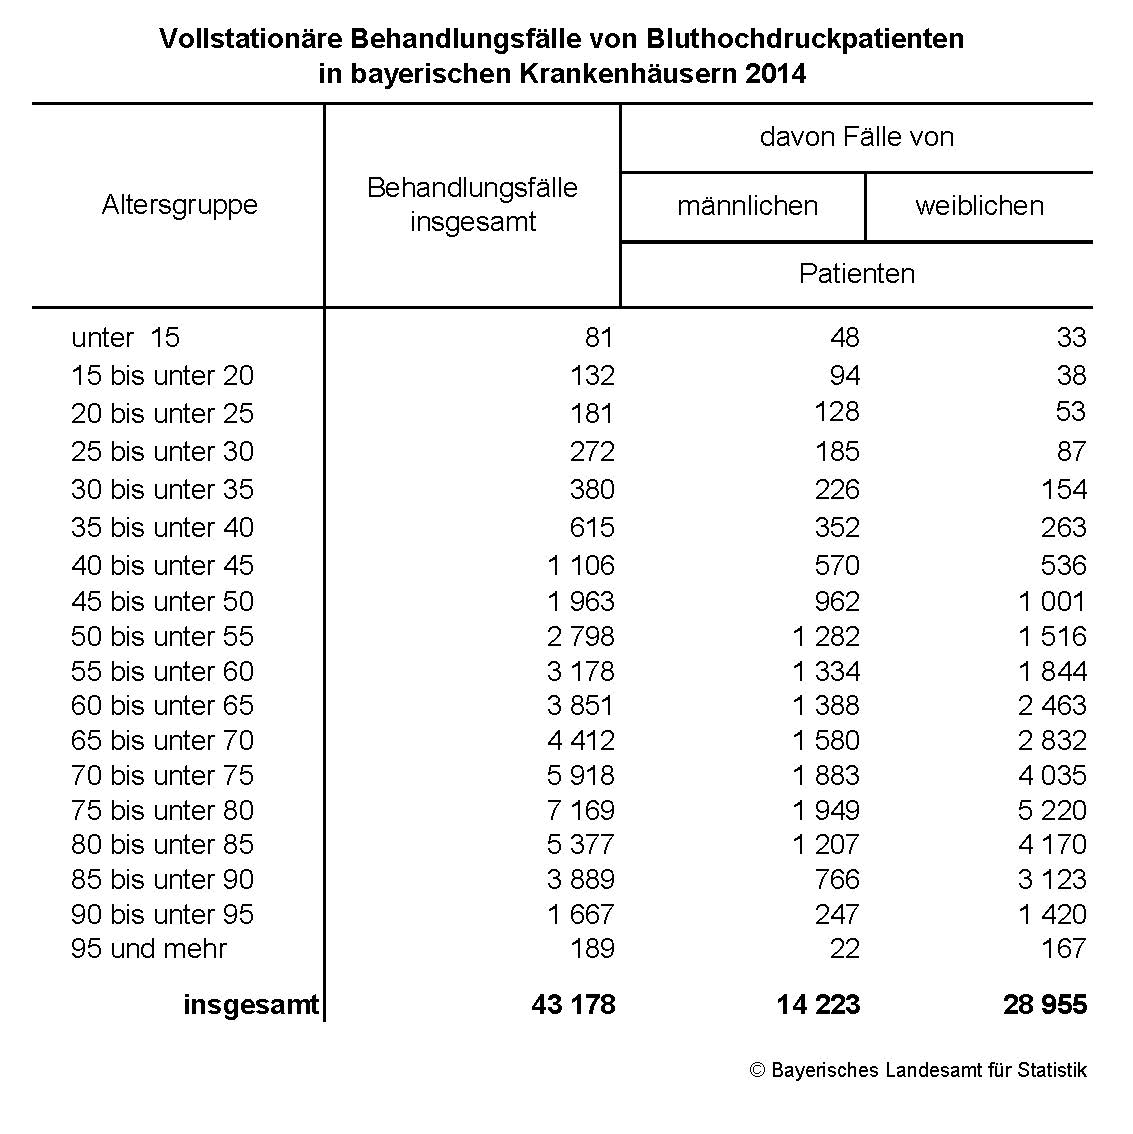 Vollstationäre Behandlungsfälle von Bluthochdruckpatienten in bayerischen Krankenhäusern 2014